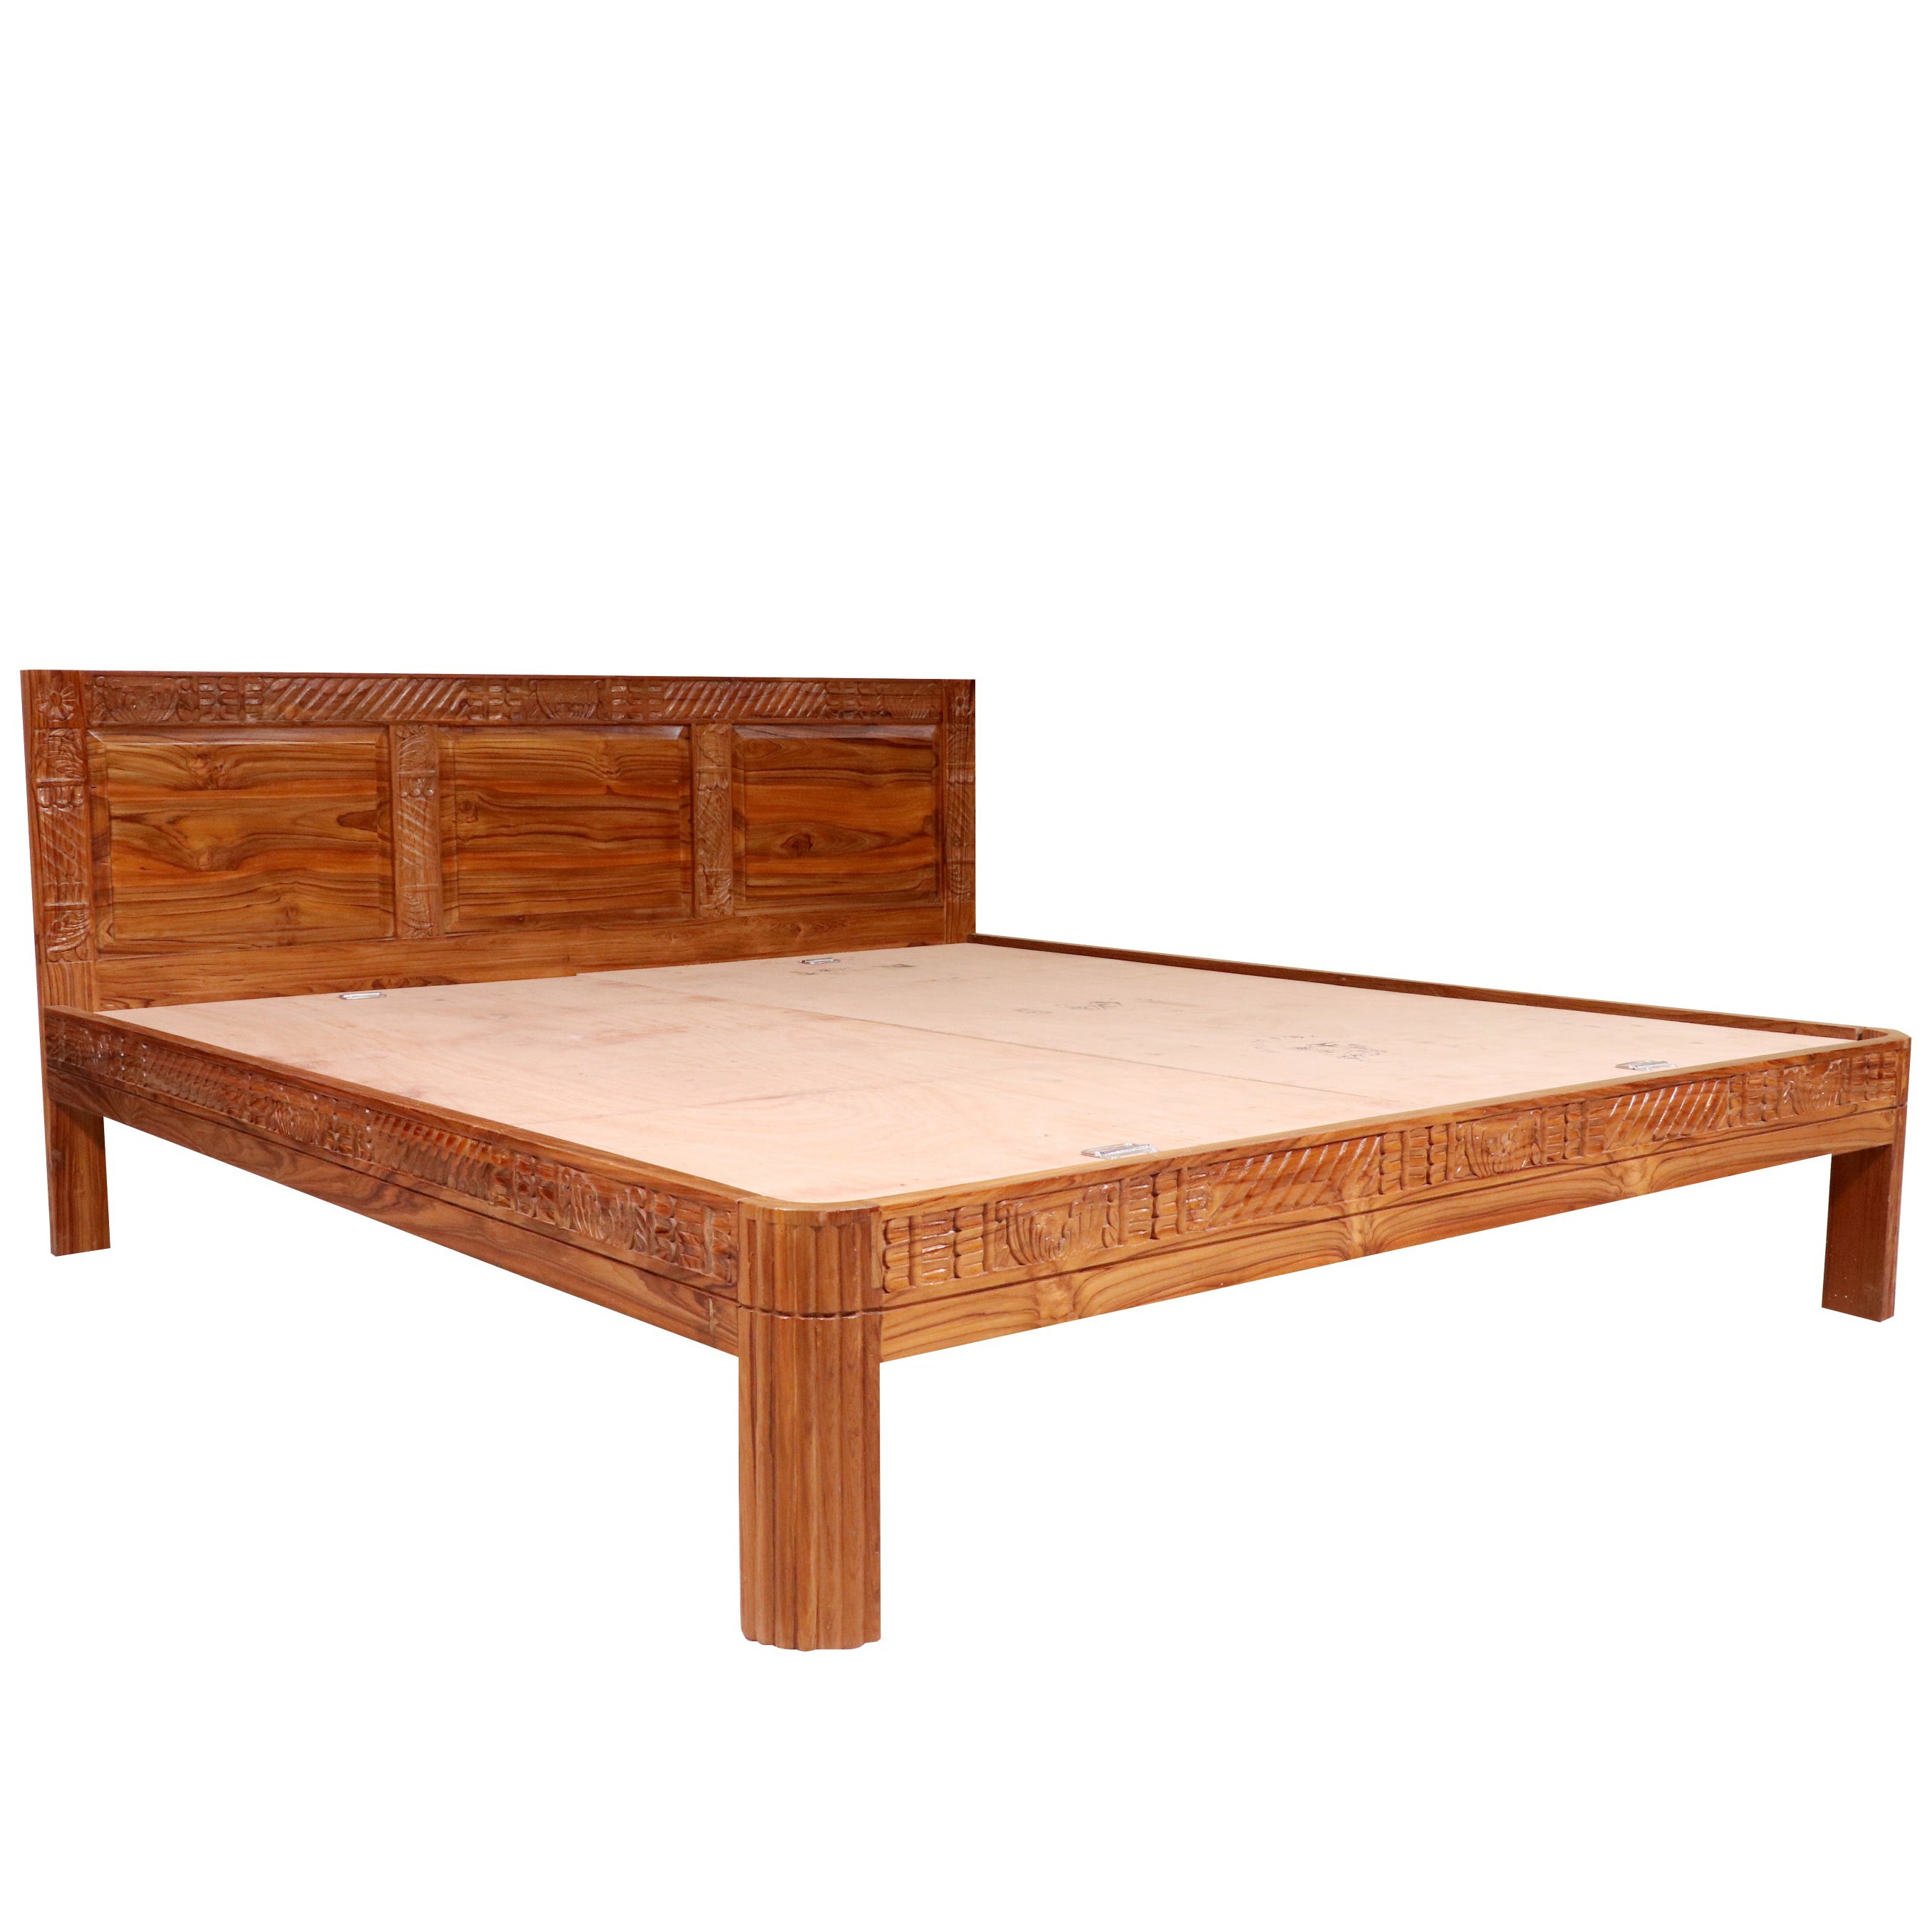 Teak wood carved Folk Concept compact Bed Bed